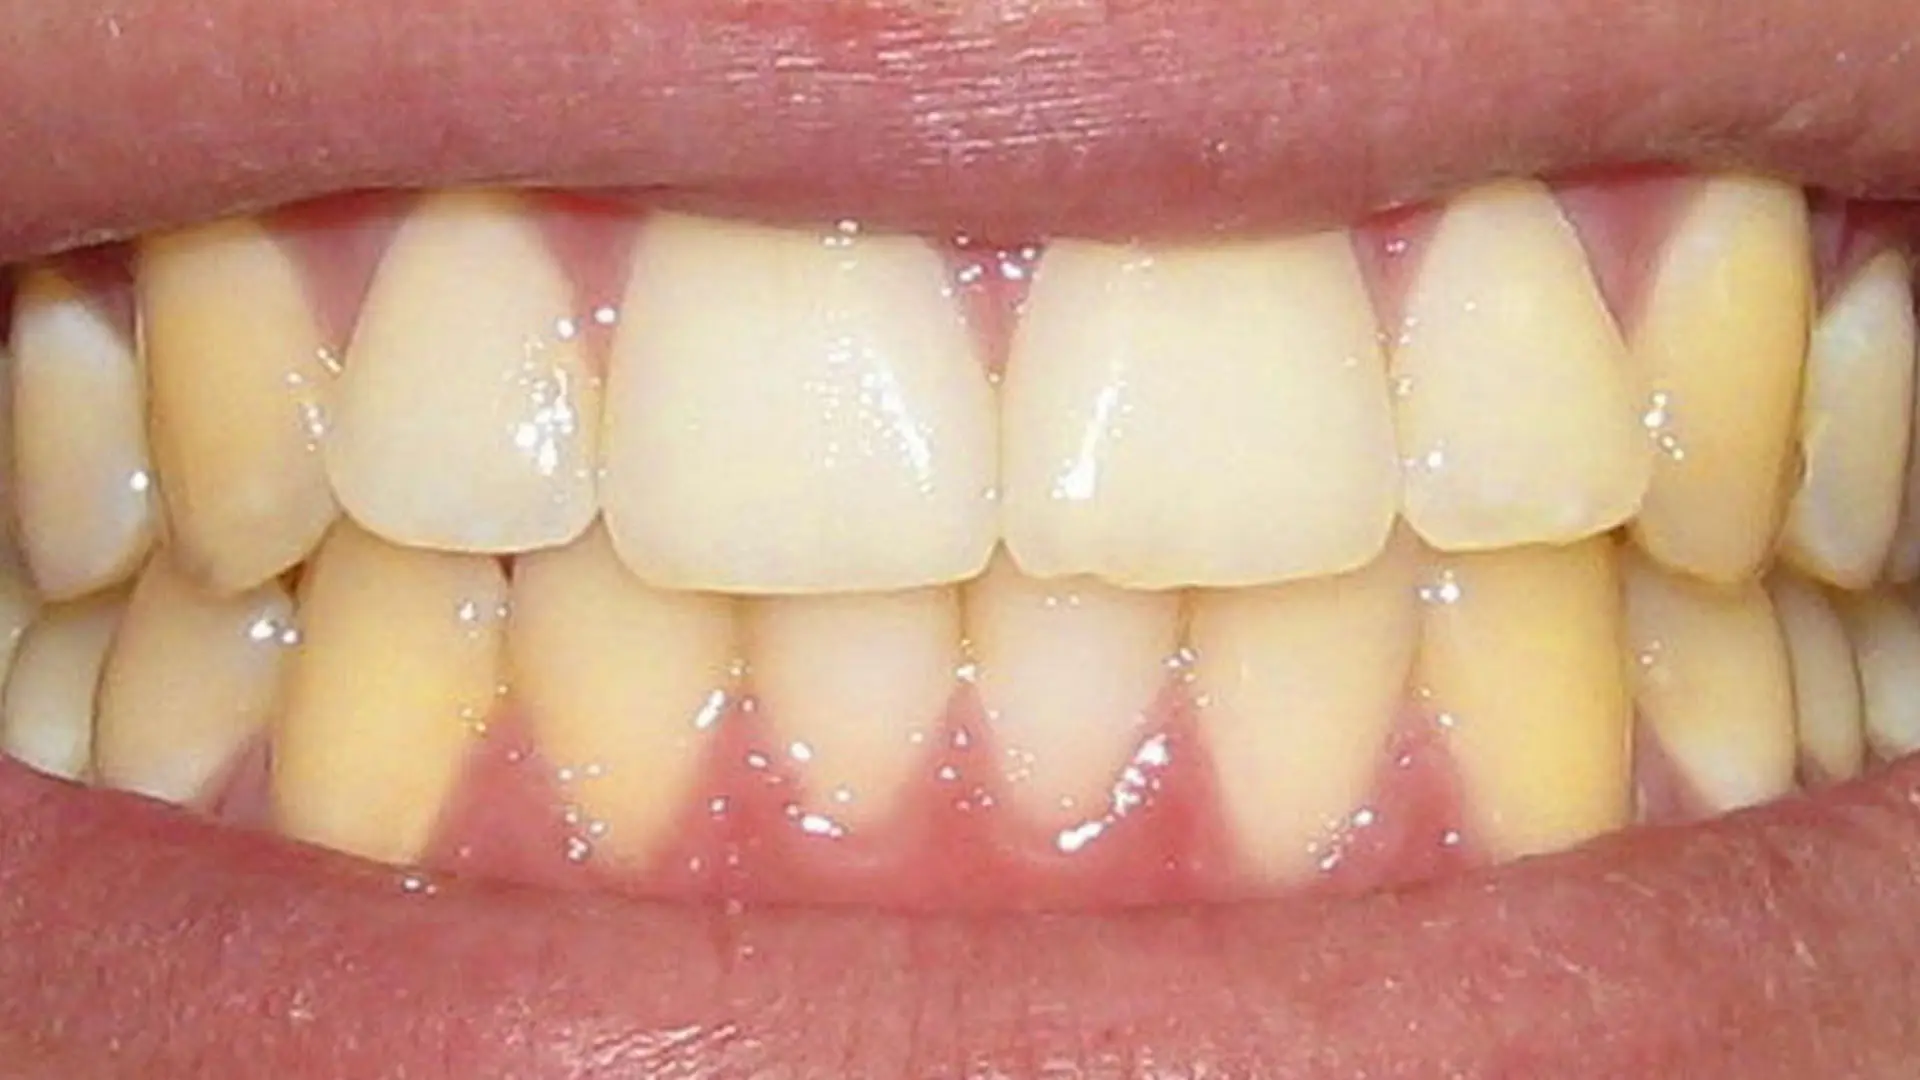 dientes amarillos es normal - Qué es más saludable los dientes amarillos o blancos